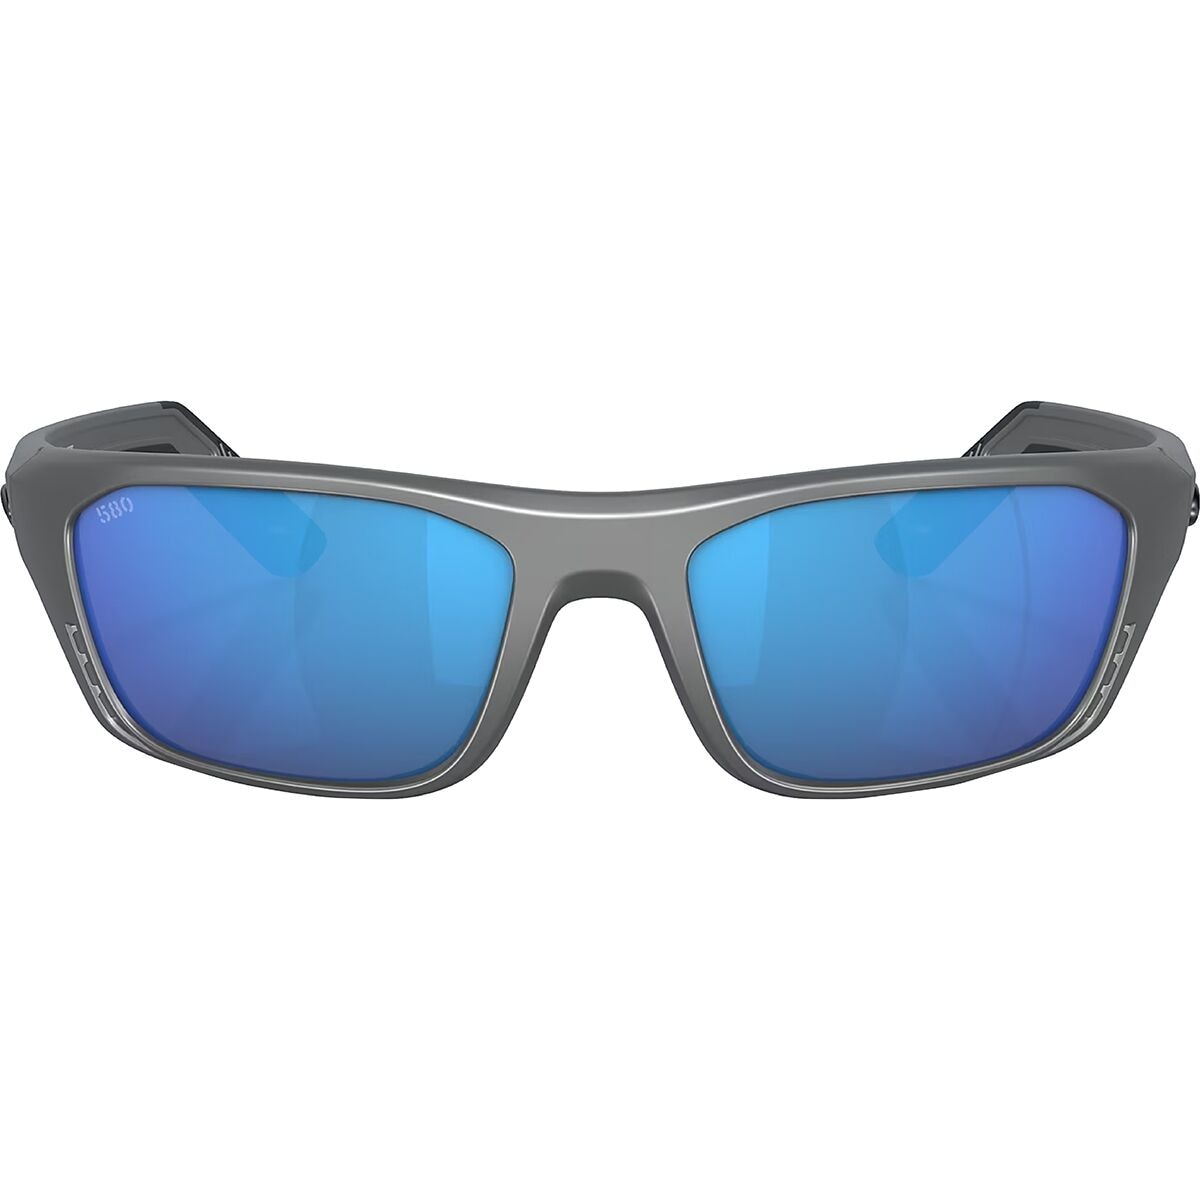 Costa Whitetip Pro 580G Polarized Sunglasses - Accessories